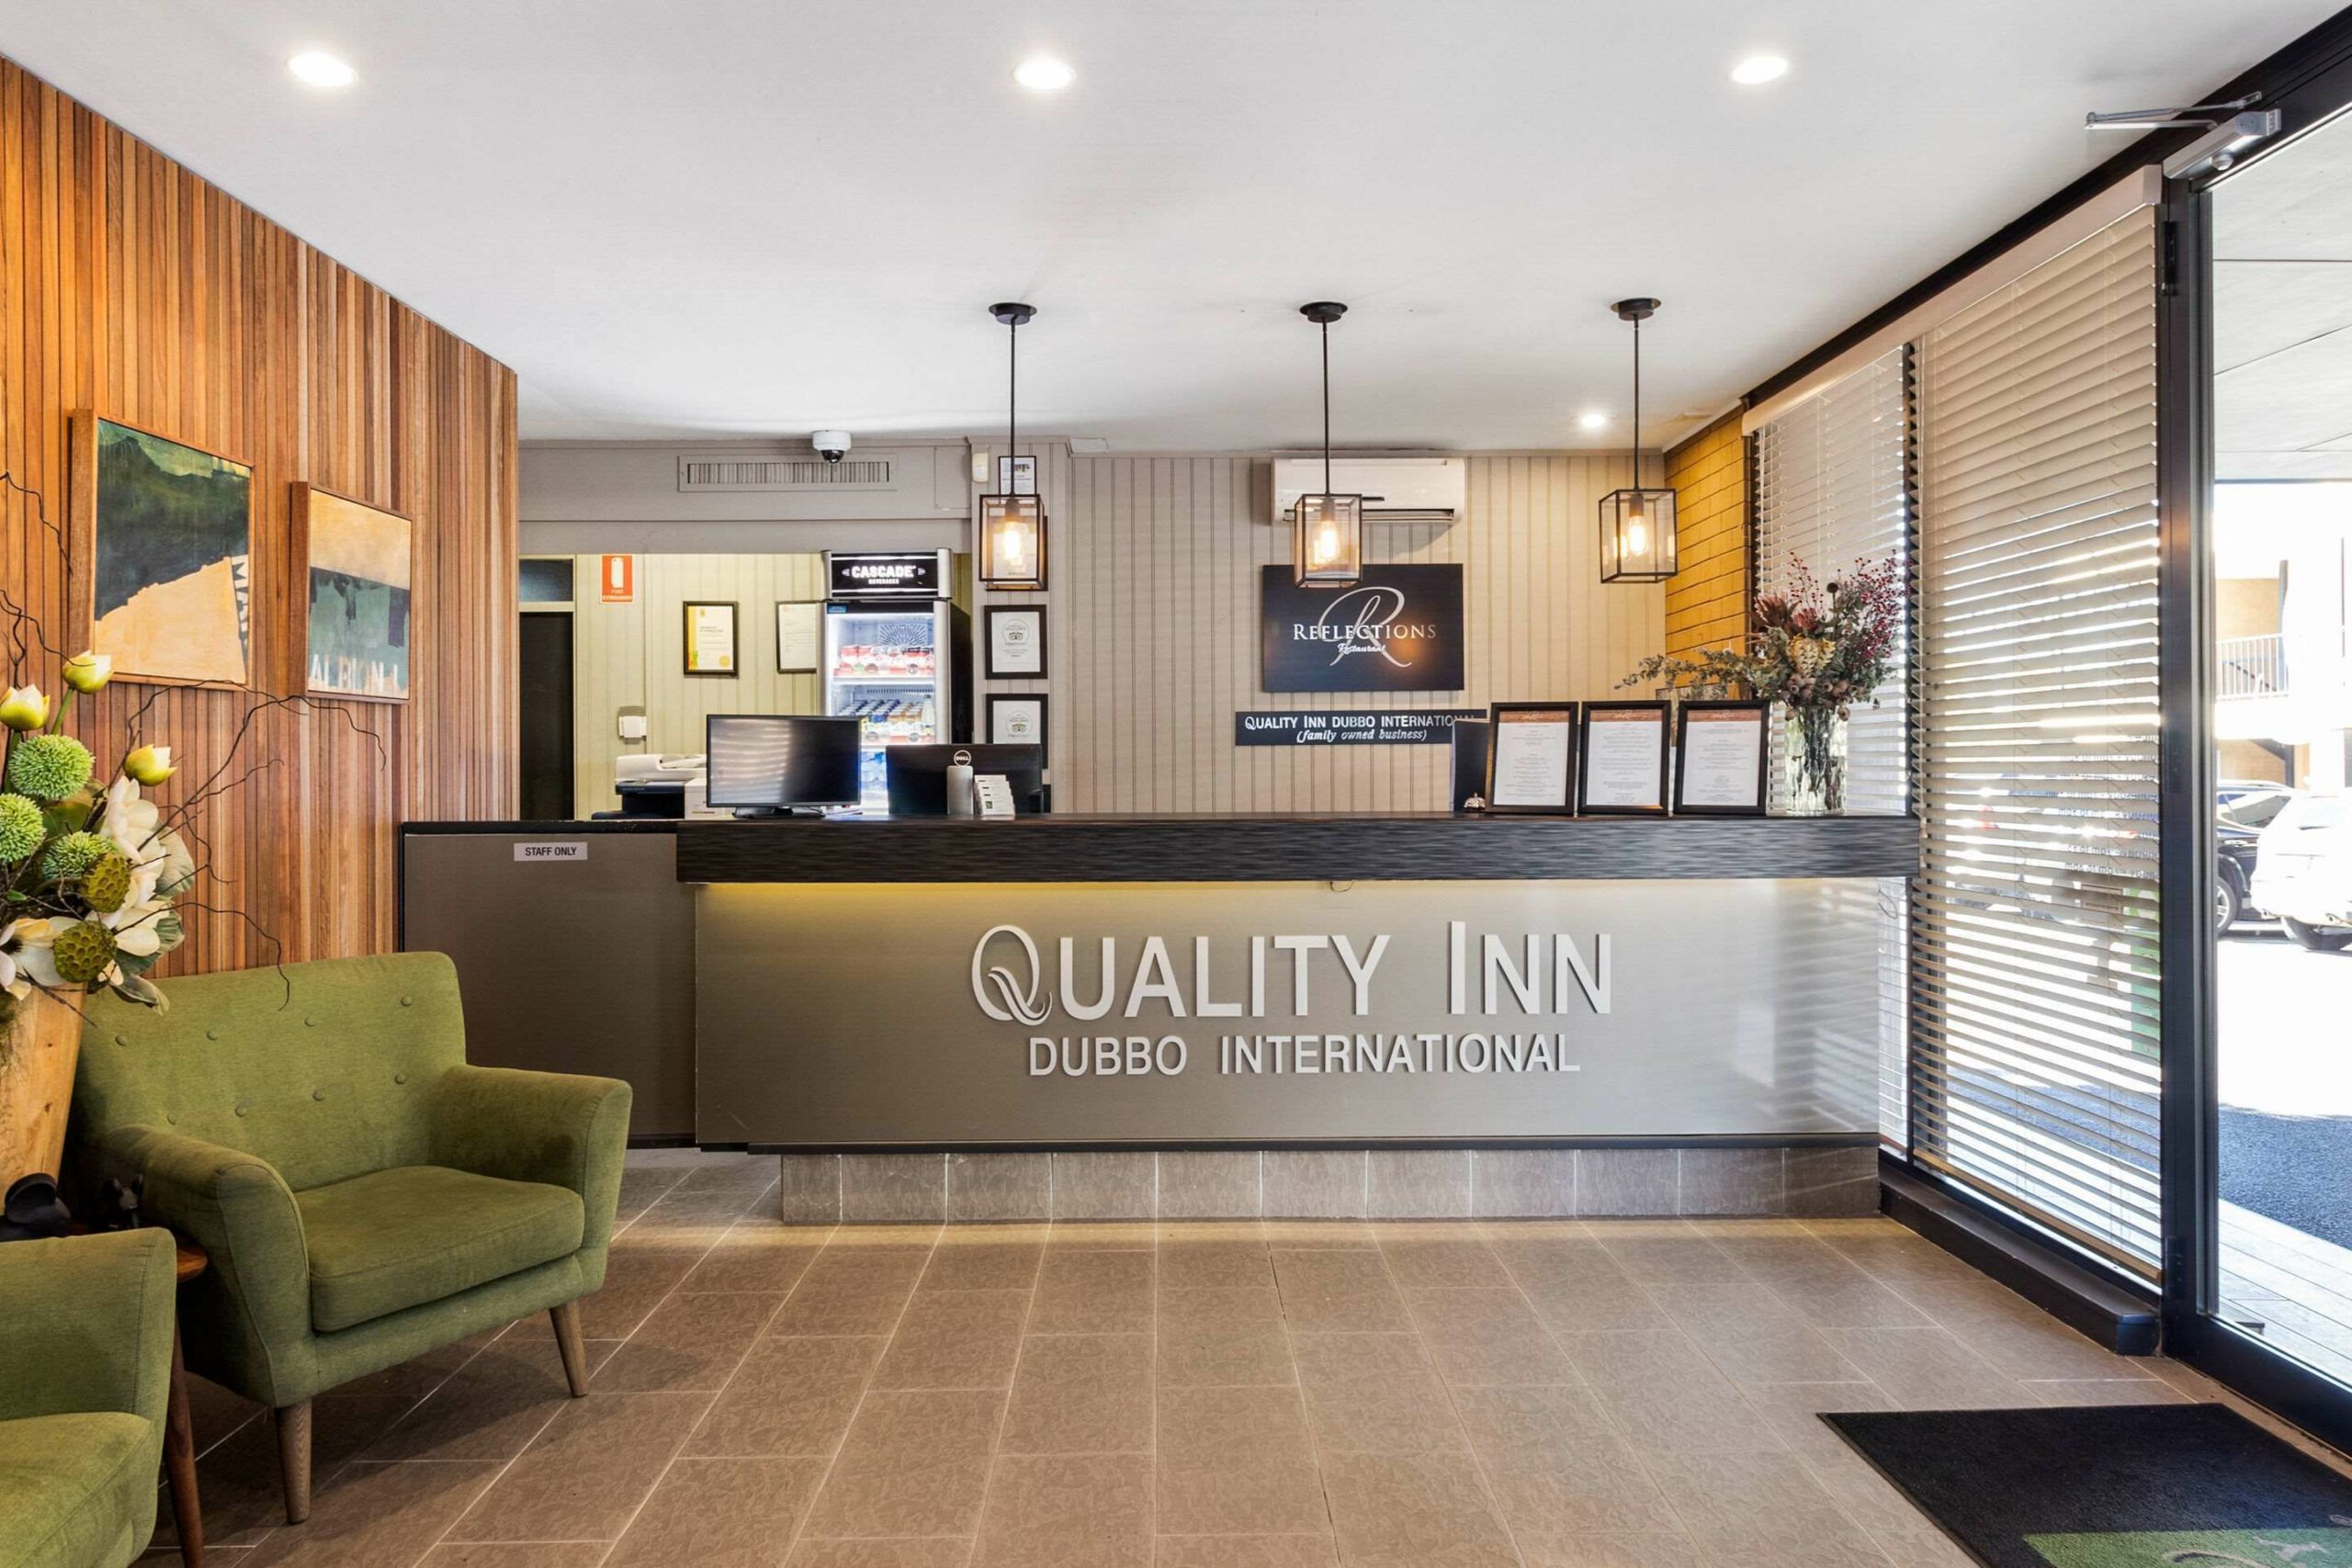 Quality Inn Dubbo International